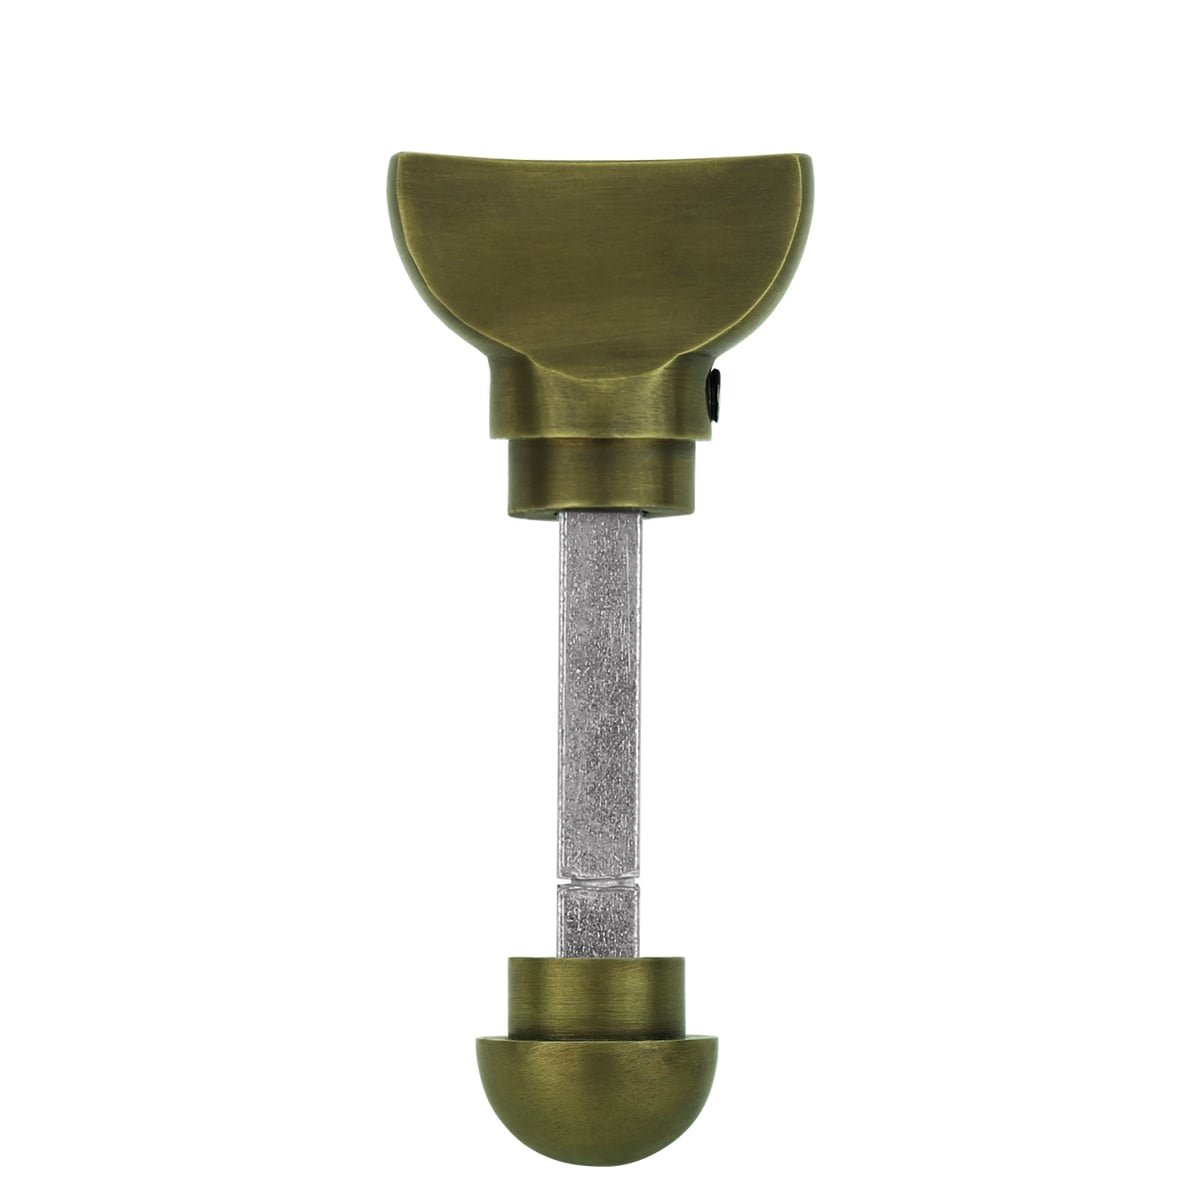 Toilettenschloss bronze flügelknopf - Ø 23 mm